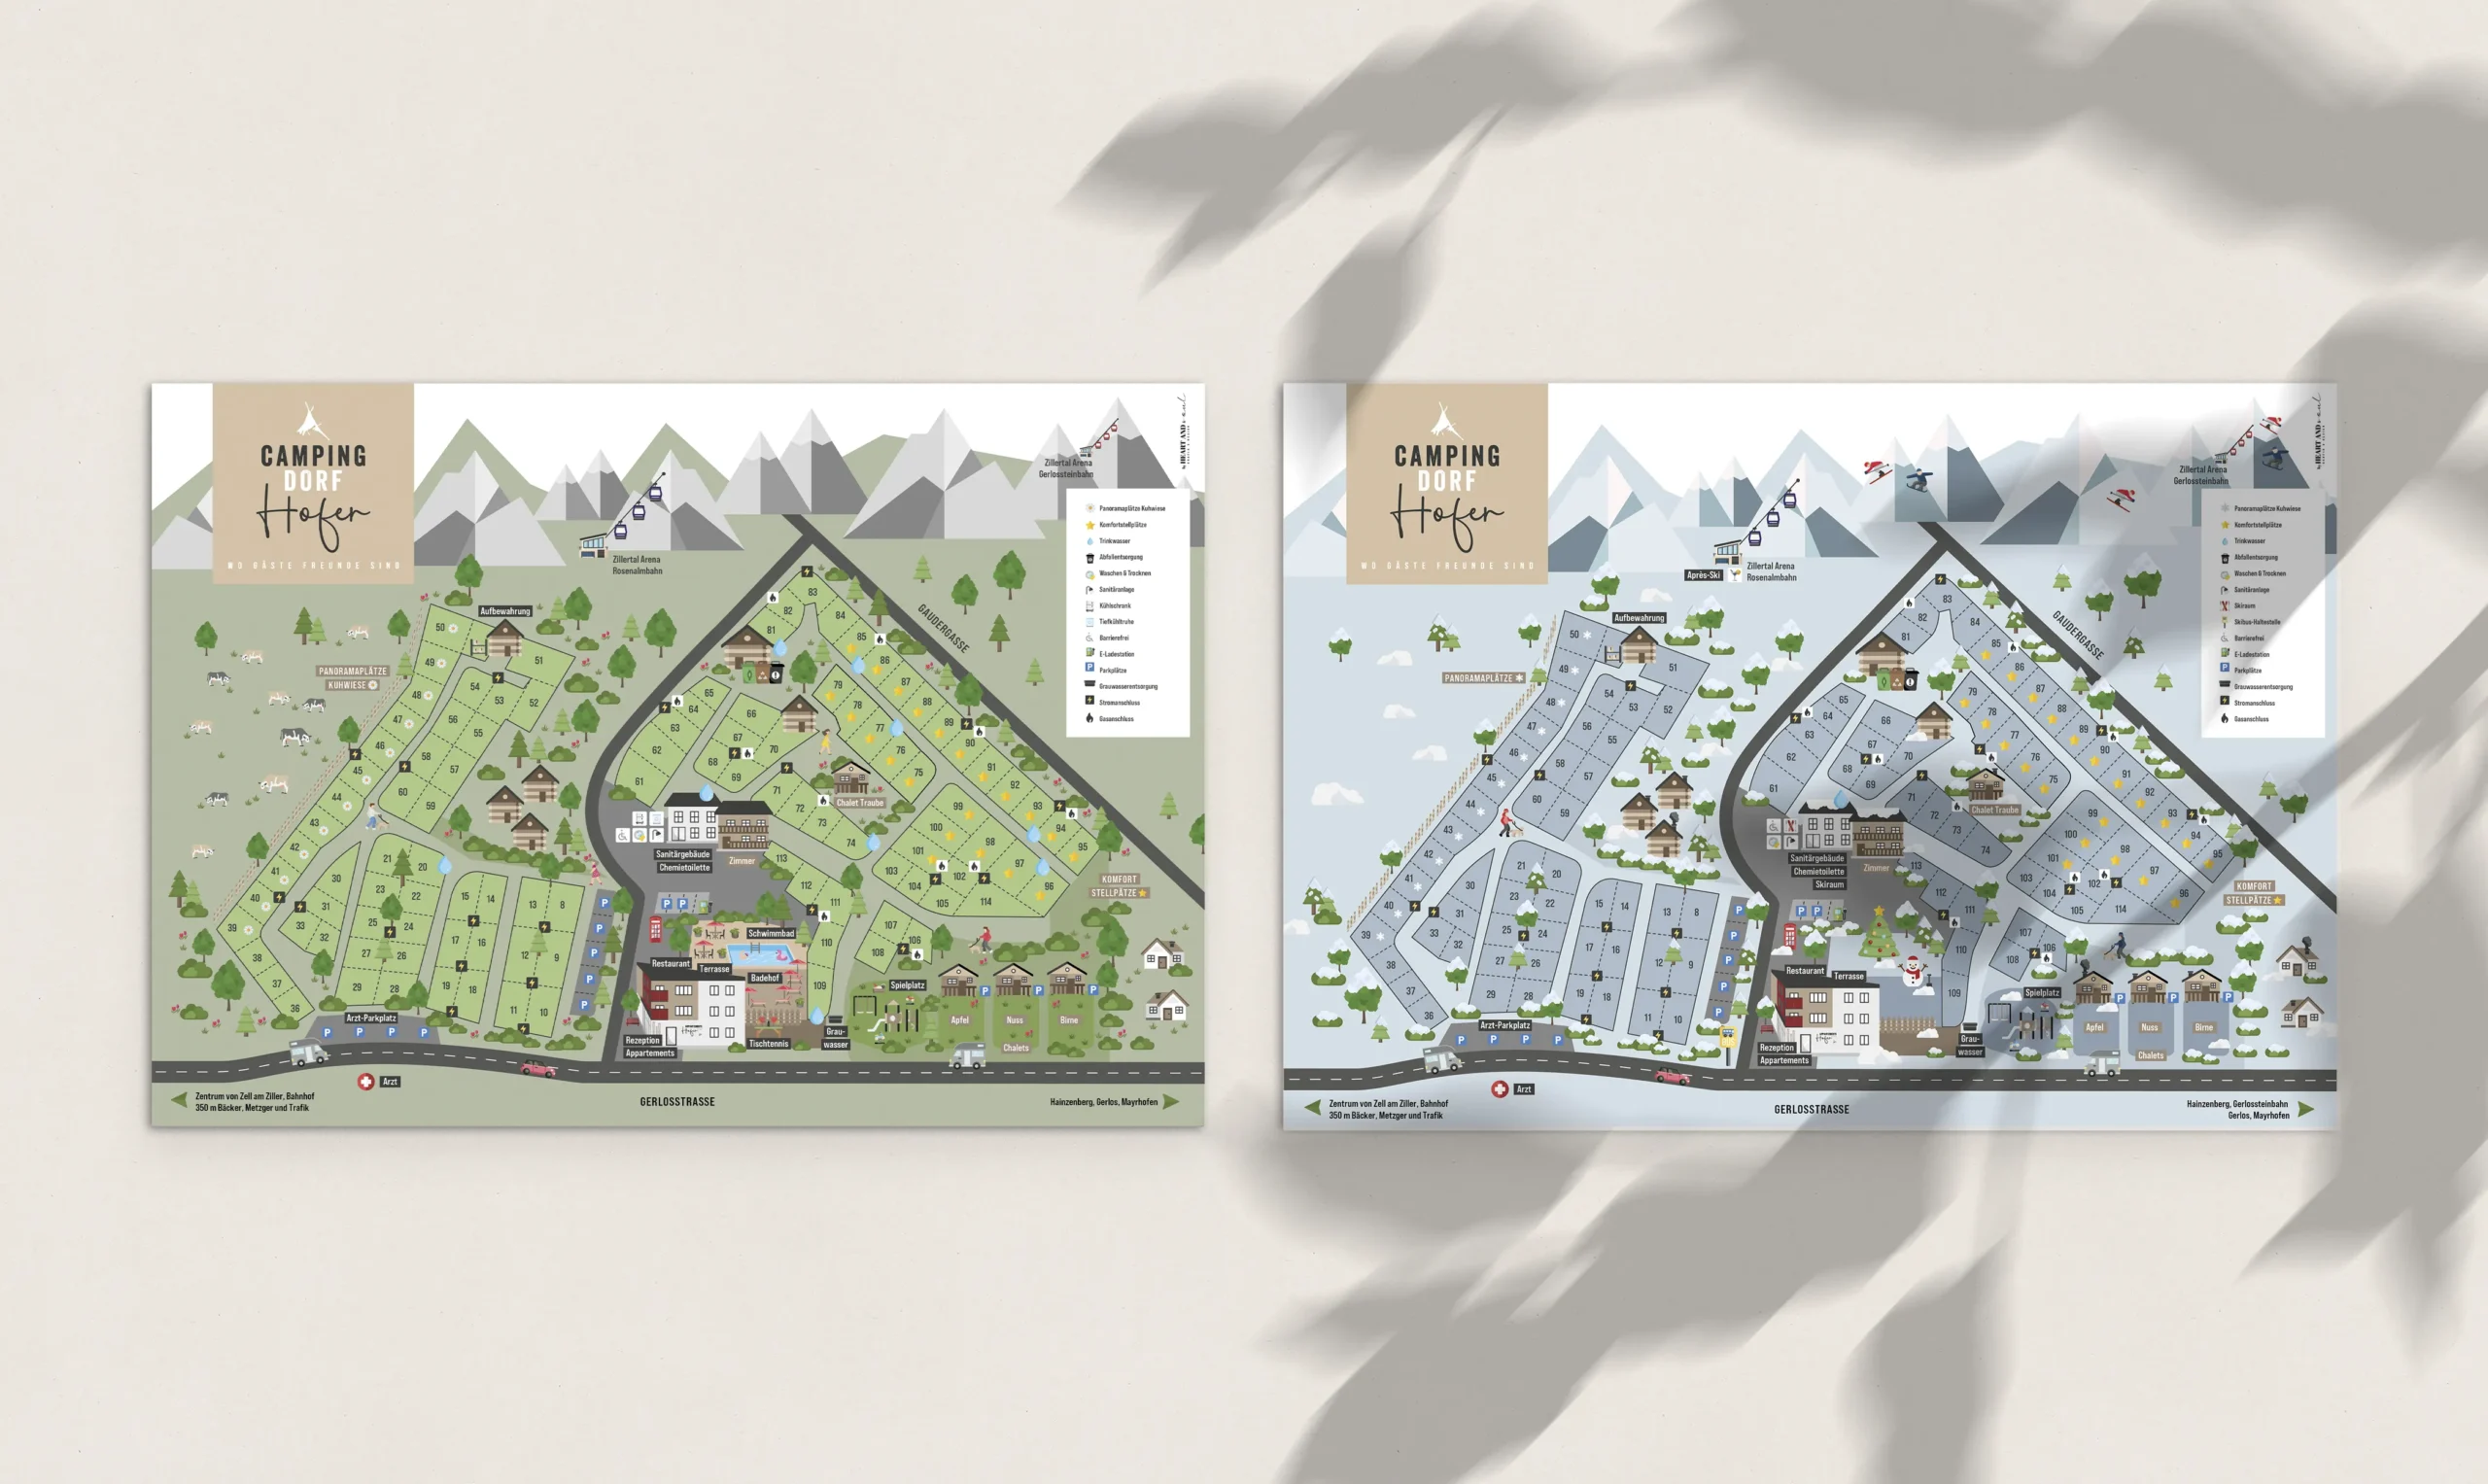 Kreatives Grafikdesign: Platzplan Design Campingdorf Hofer Zell am Ziller. Der Kreativität sind keine Grenzen gesetzt.